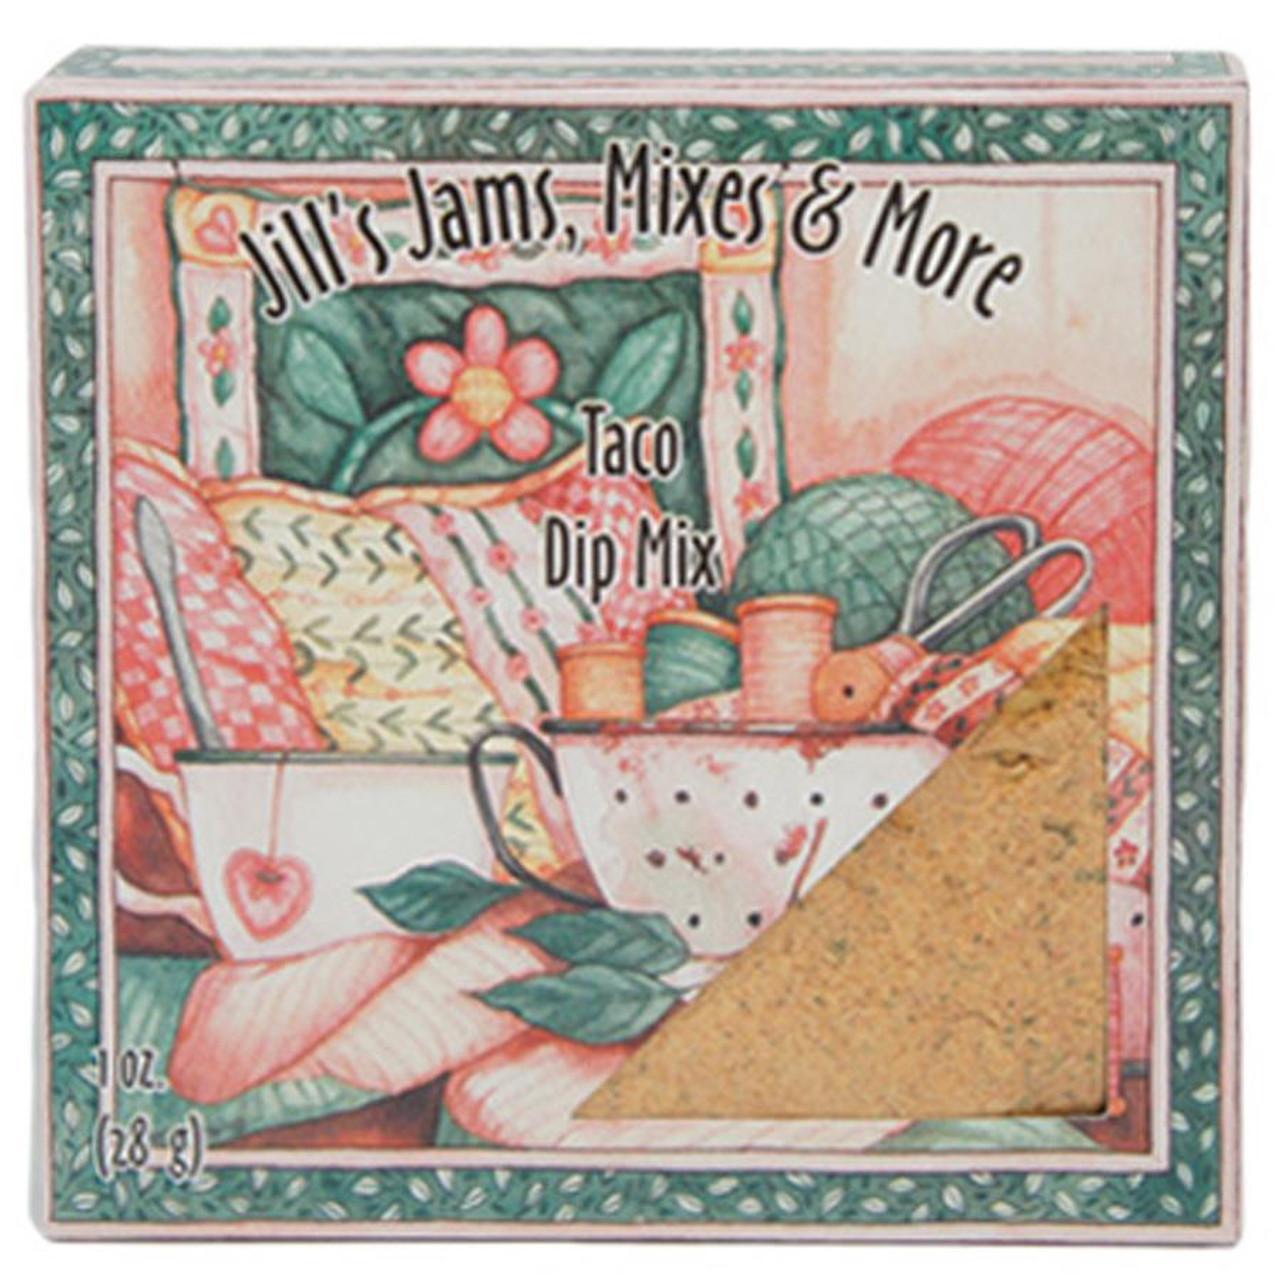 Jill's Jams, Mixes & More Taco Dip Mix